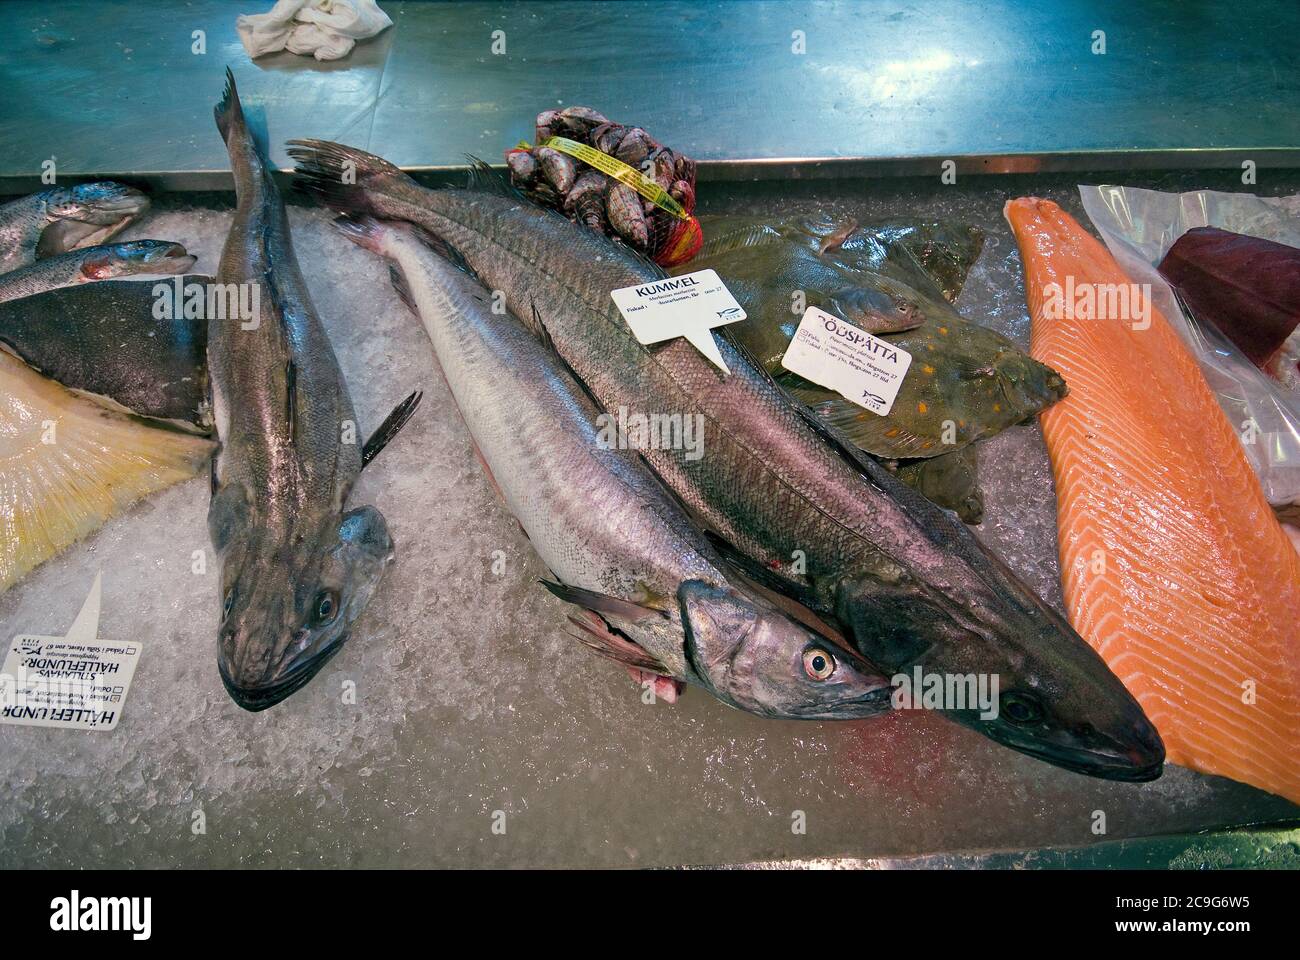 Fishes for sale at Feskekörka Fish Market, Gothenburg, Sweden Stock Photo